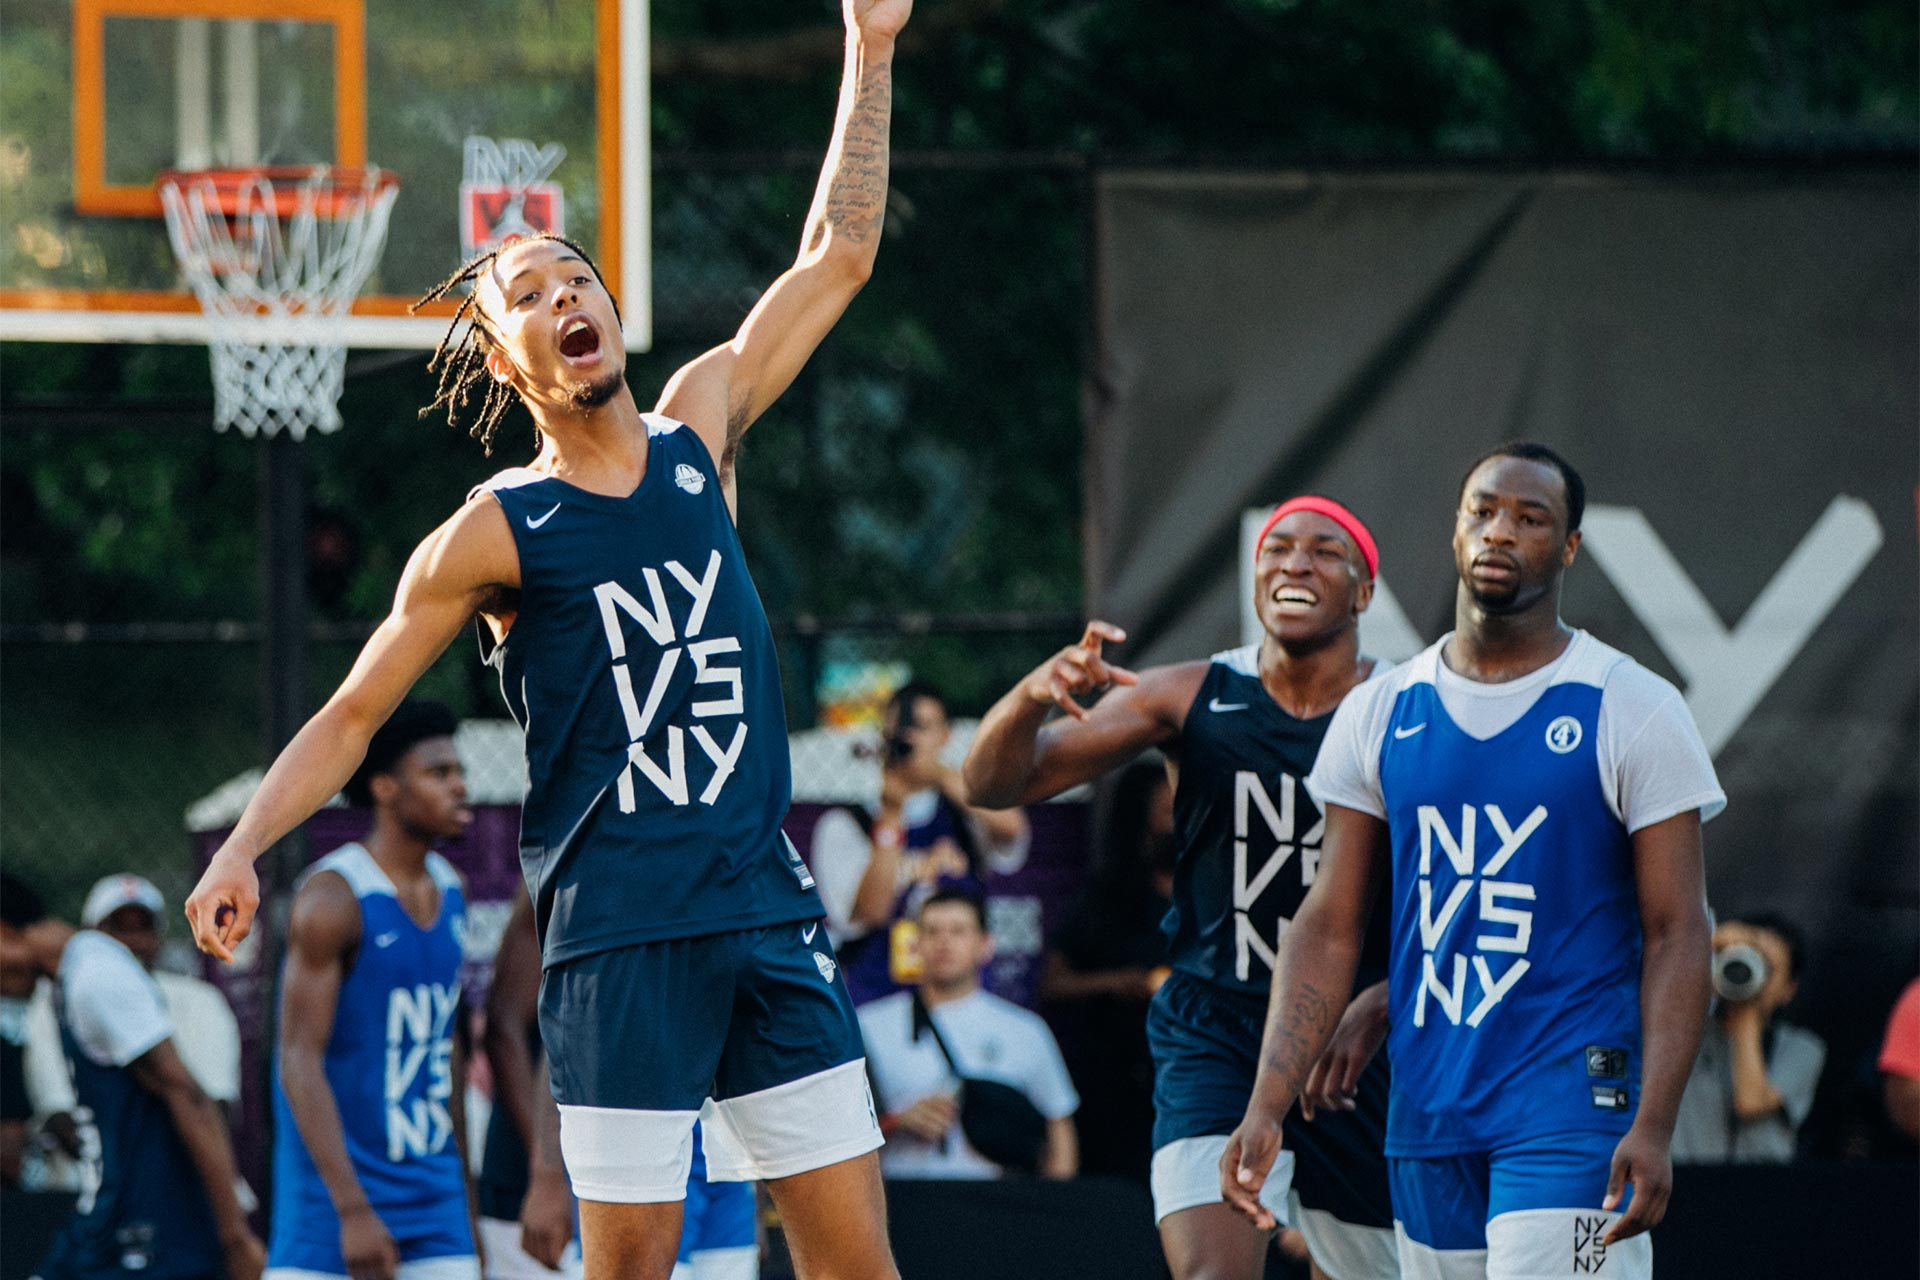 Nike NY vs NY Basketball Tournament 2022